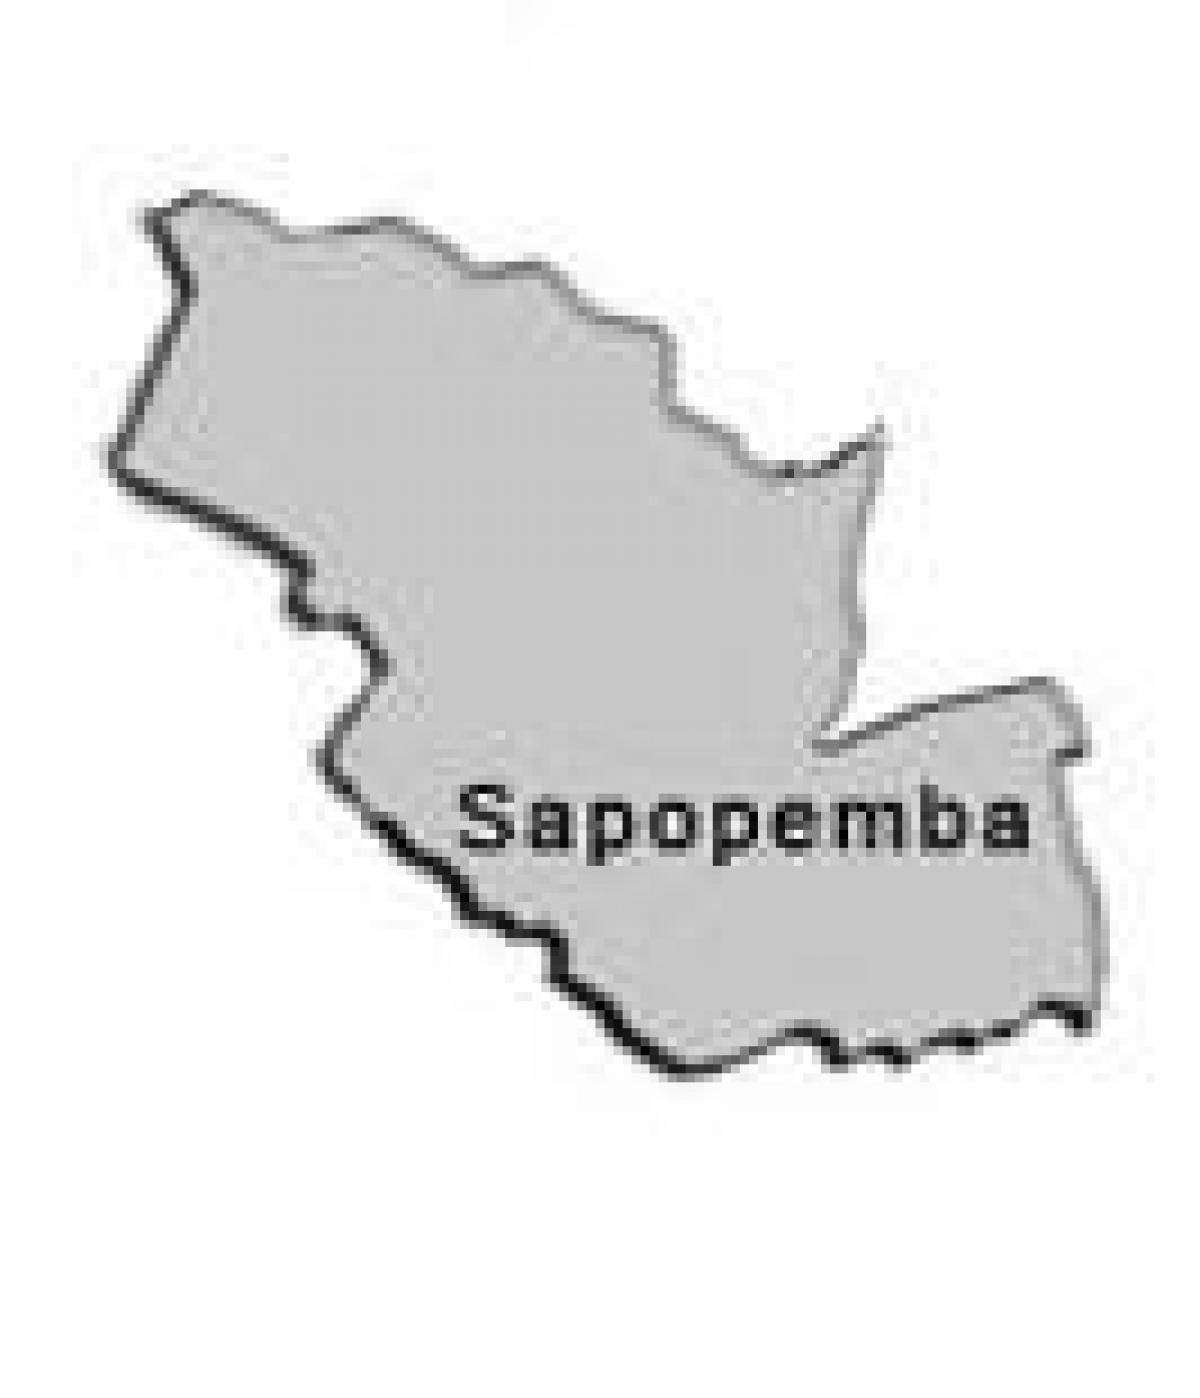 地图Sapopembra子县